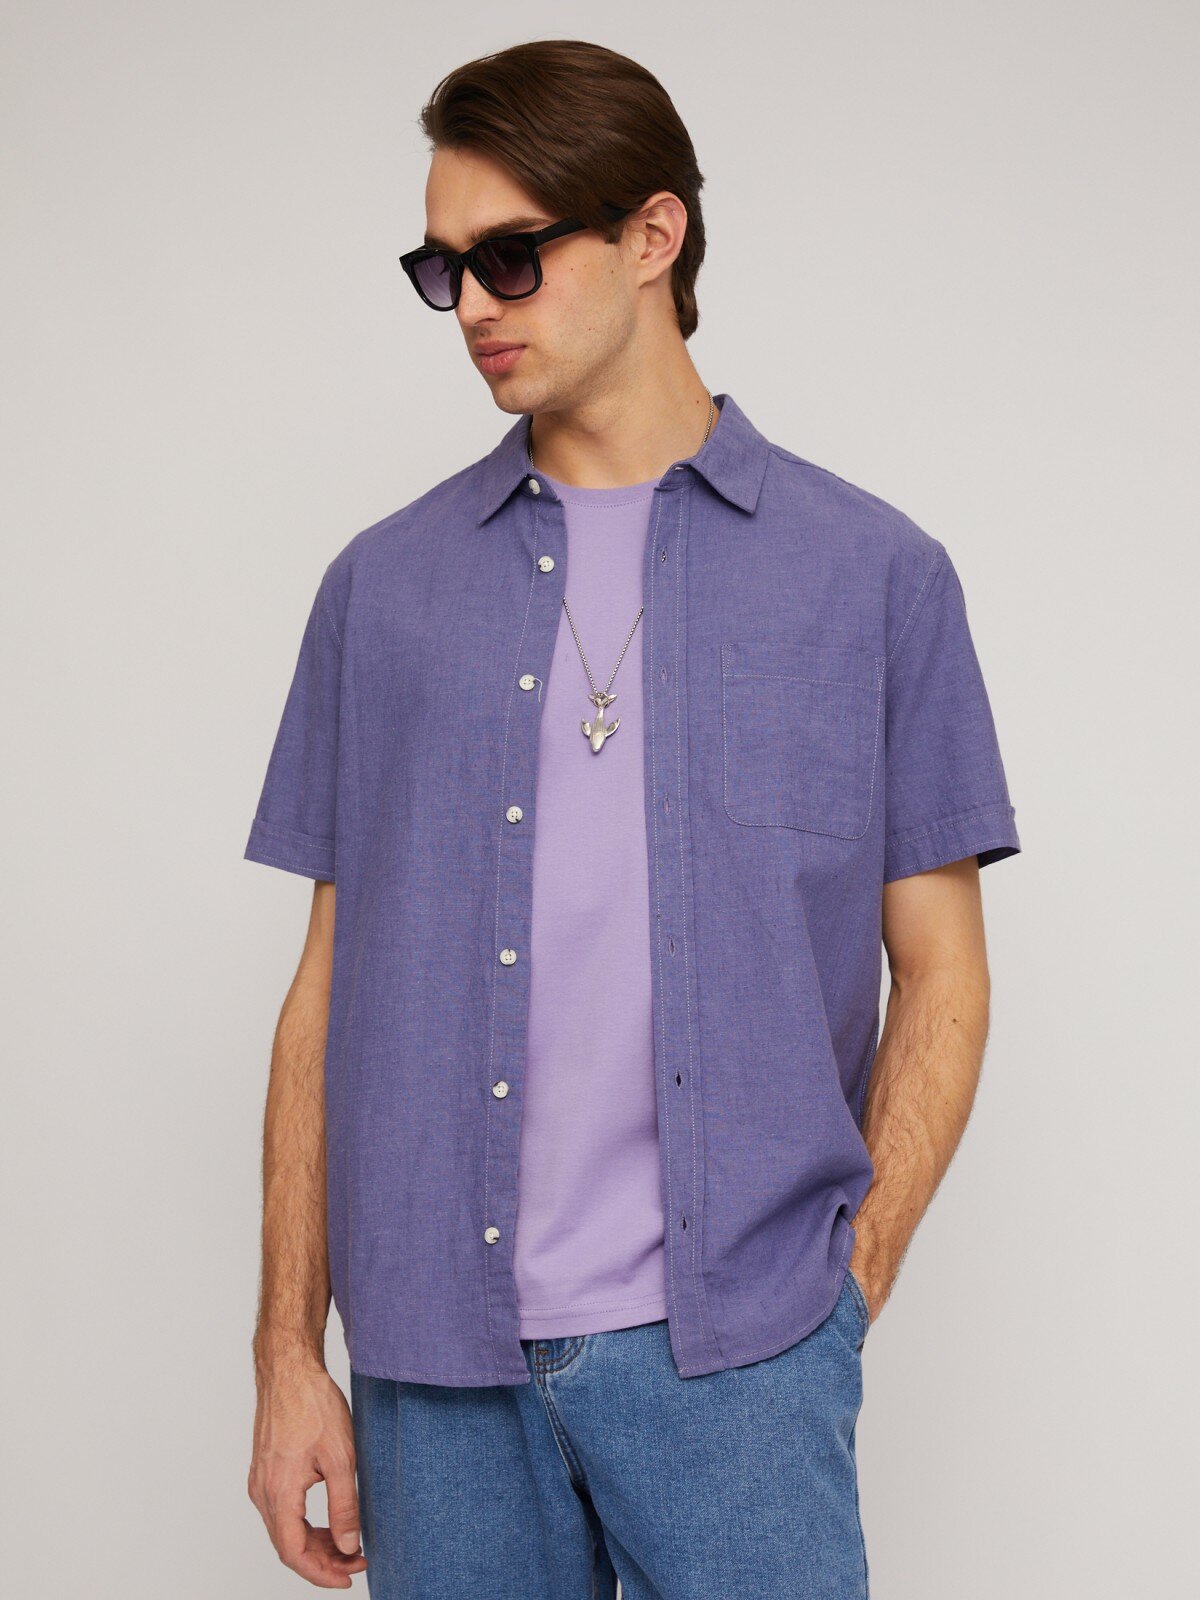 Льняная рубашка с коротким рукавом цвет Фиолетовый размер L 014242259023